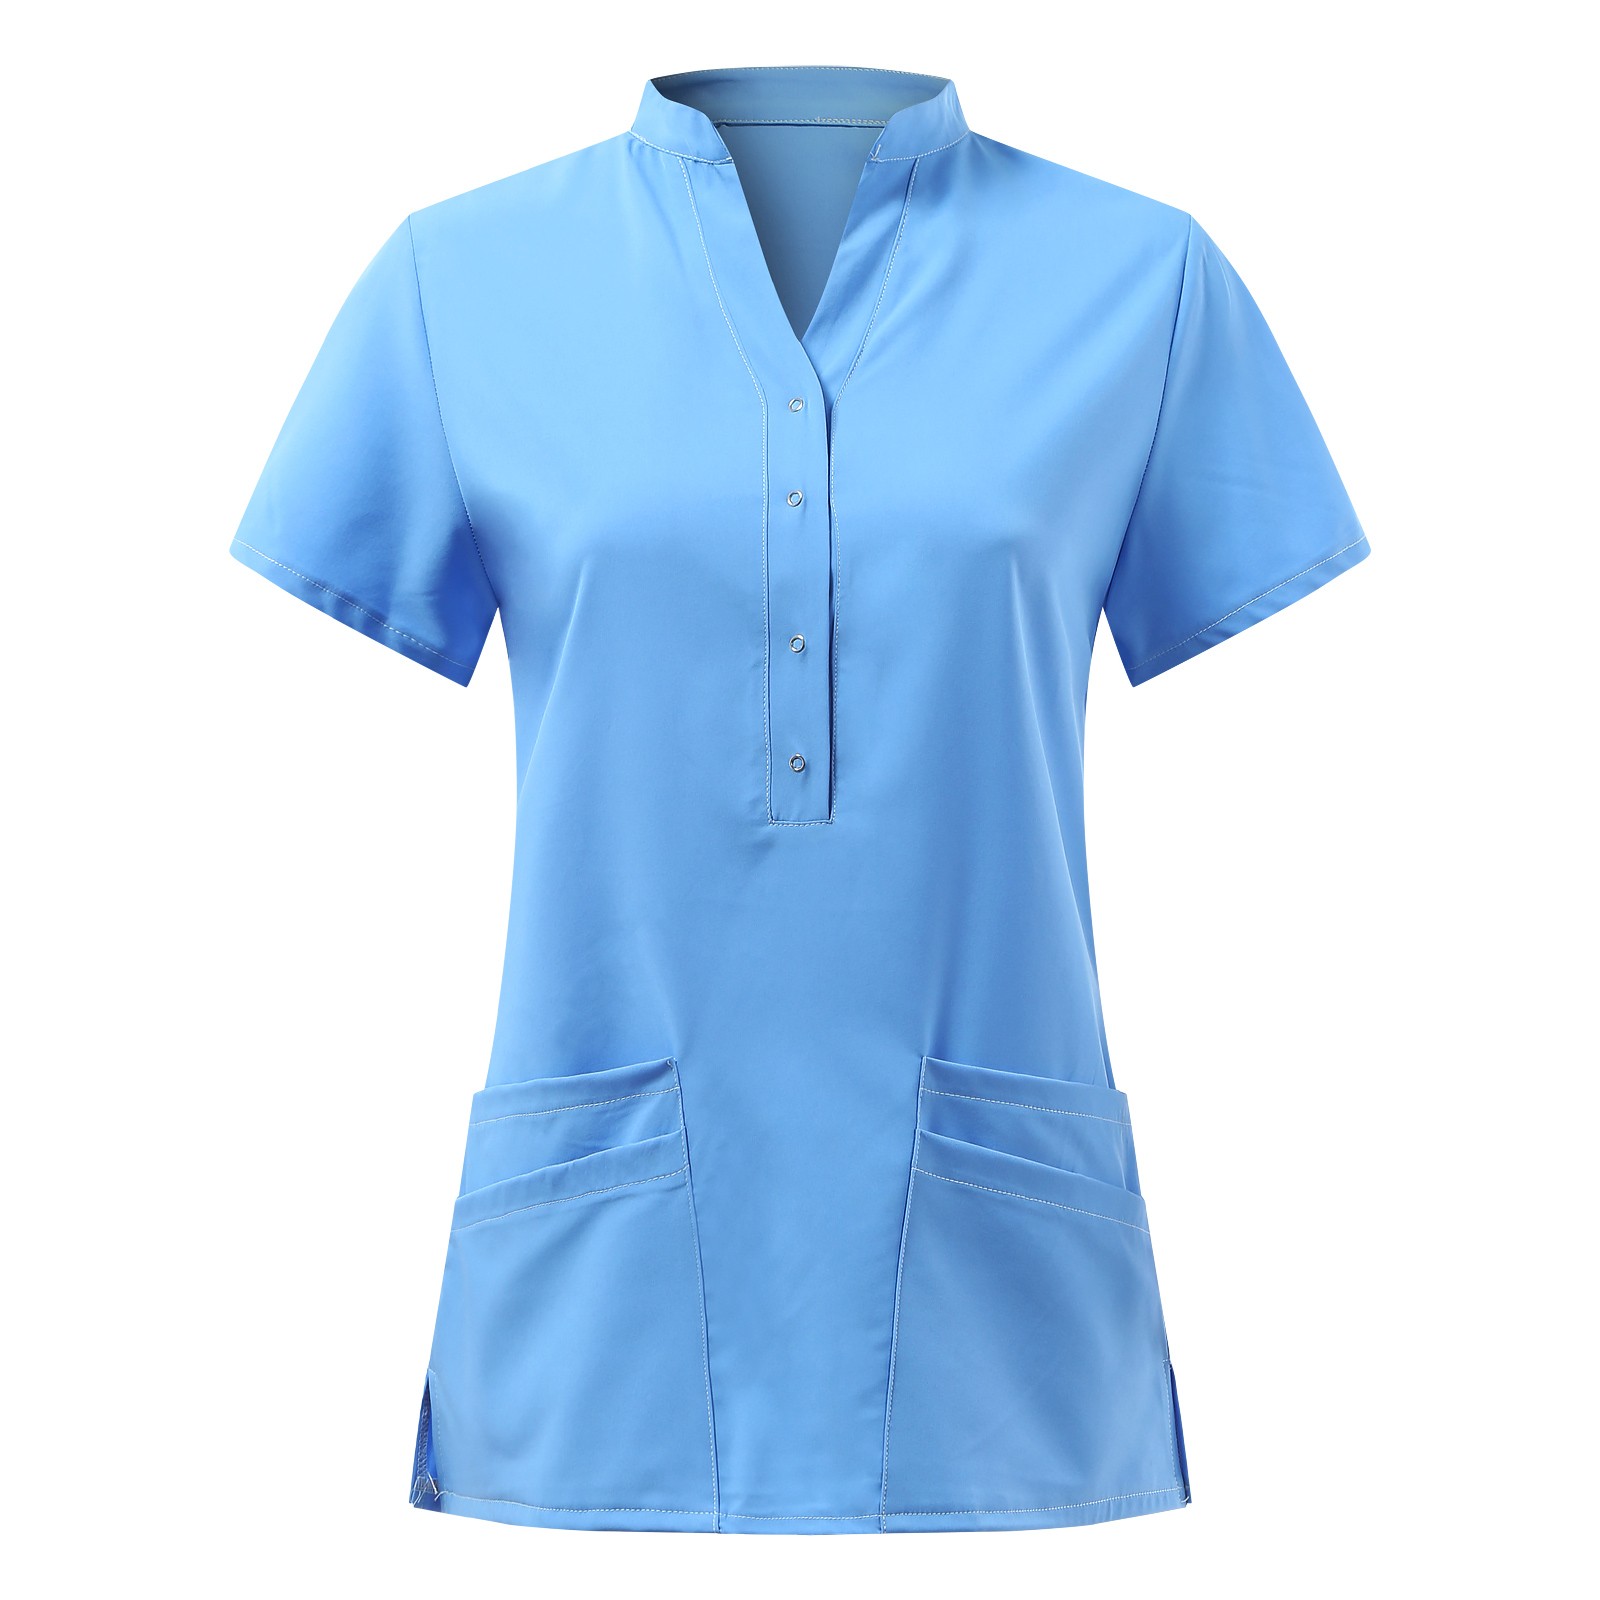 El uniforme unisex de moda de la enfermera del servicio del OEM diseña ropa de trabajo de la atención sanitaria